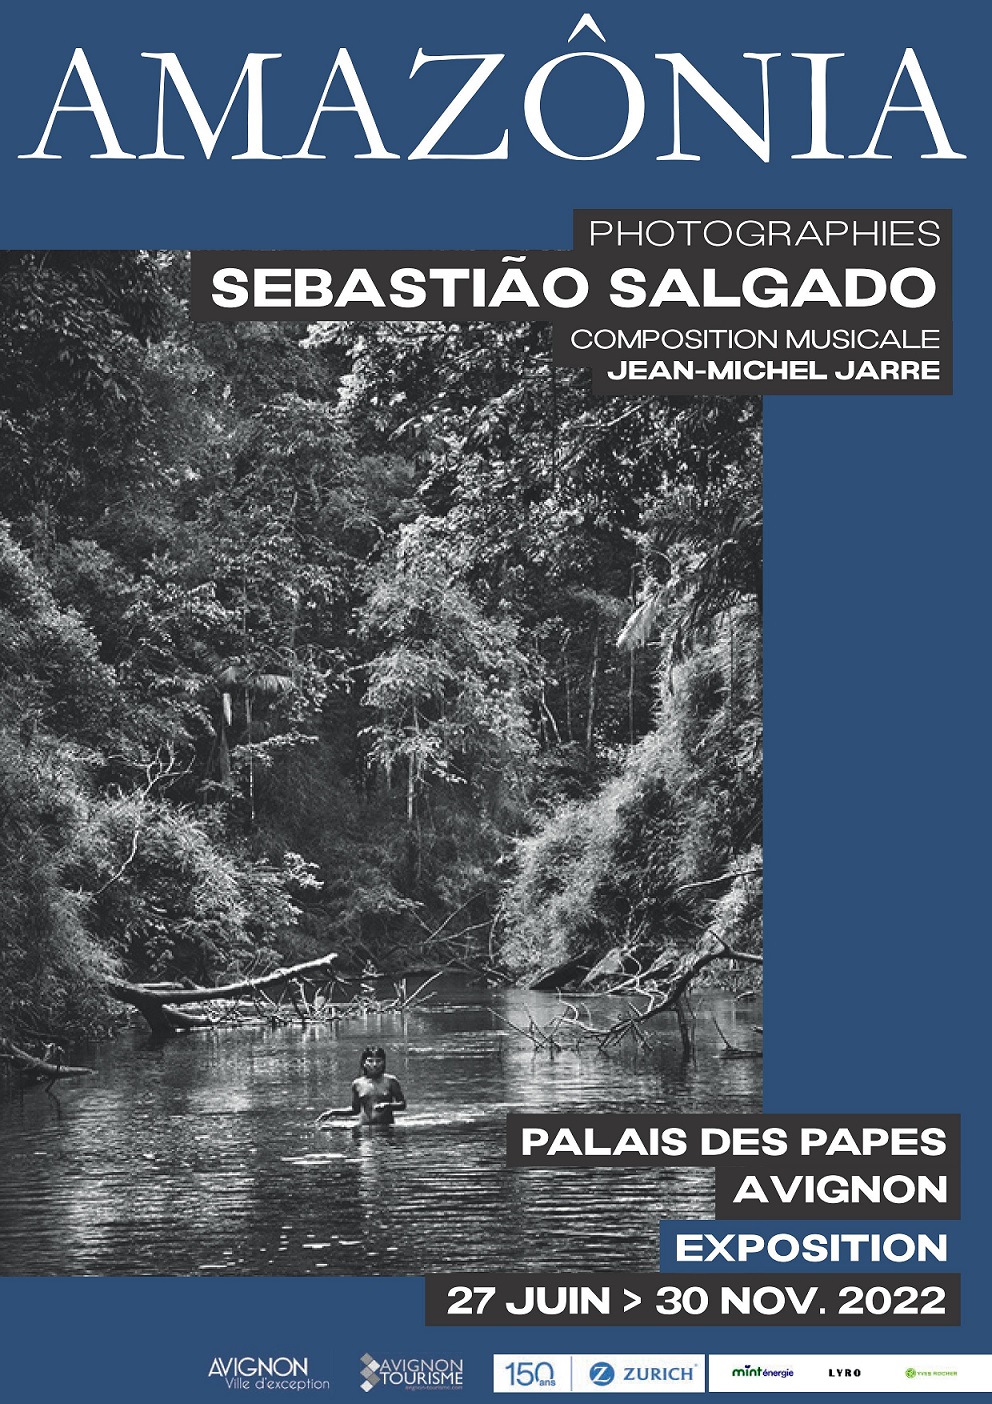 Amazonia Sebastiao Salgado